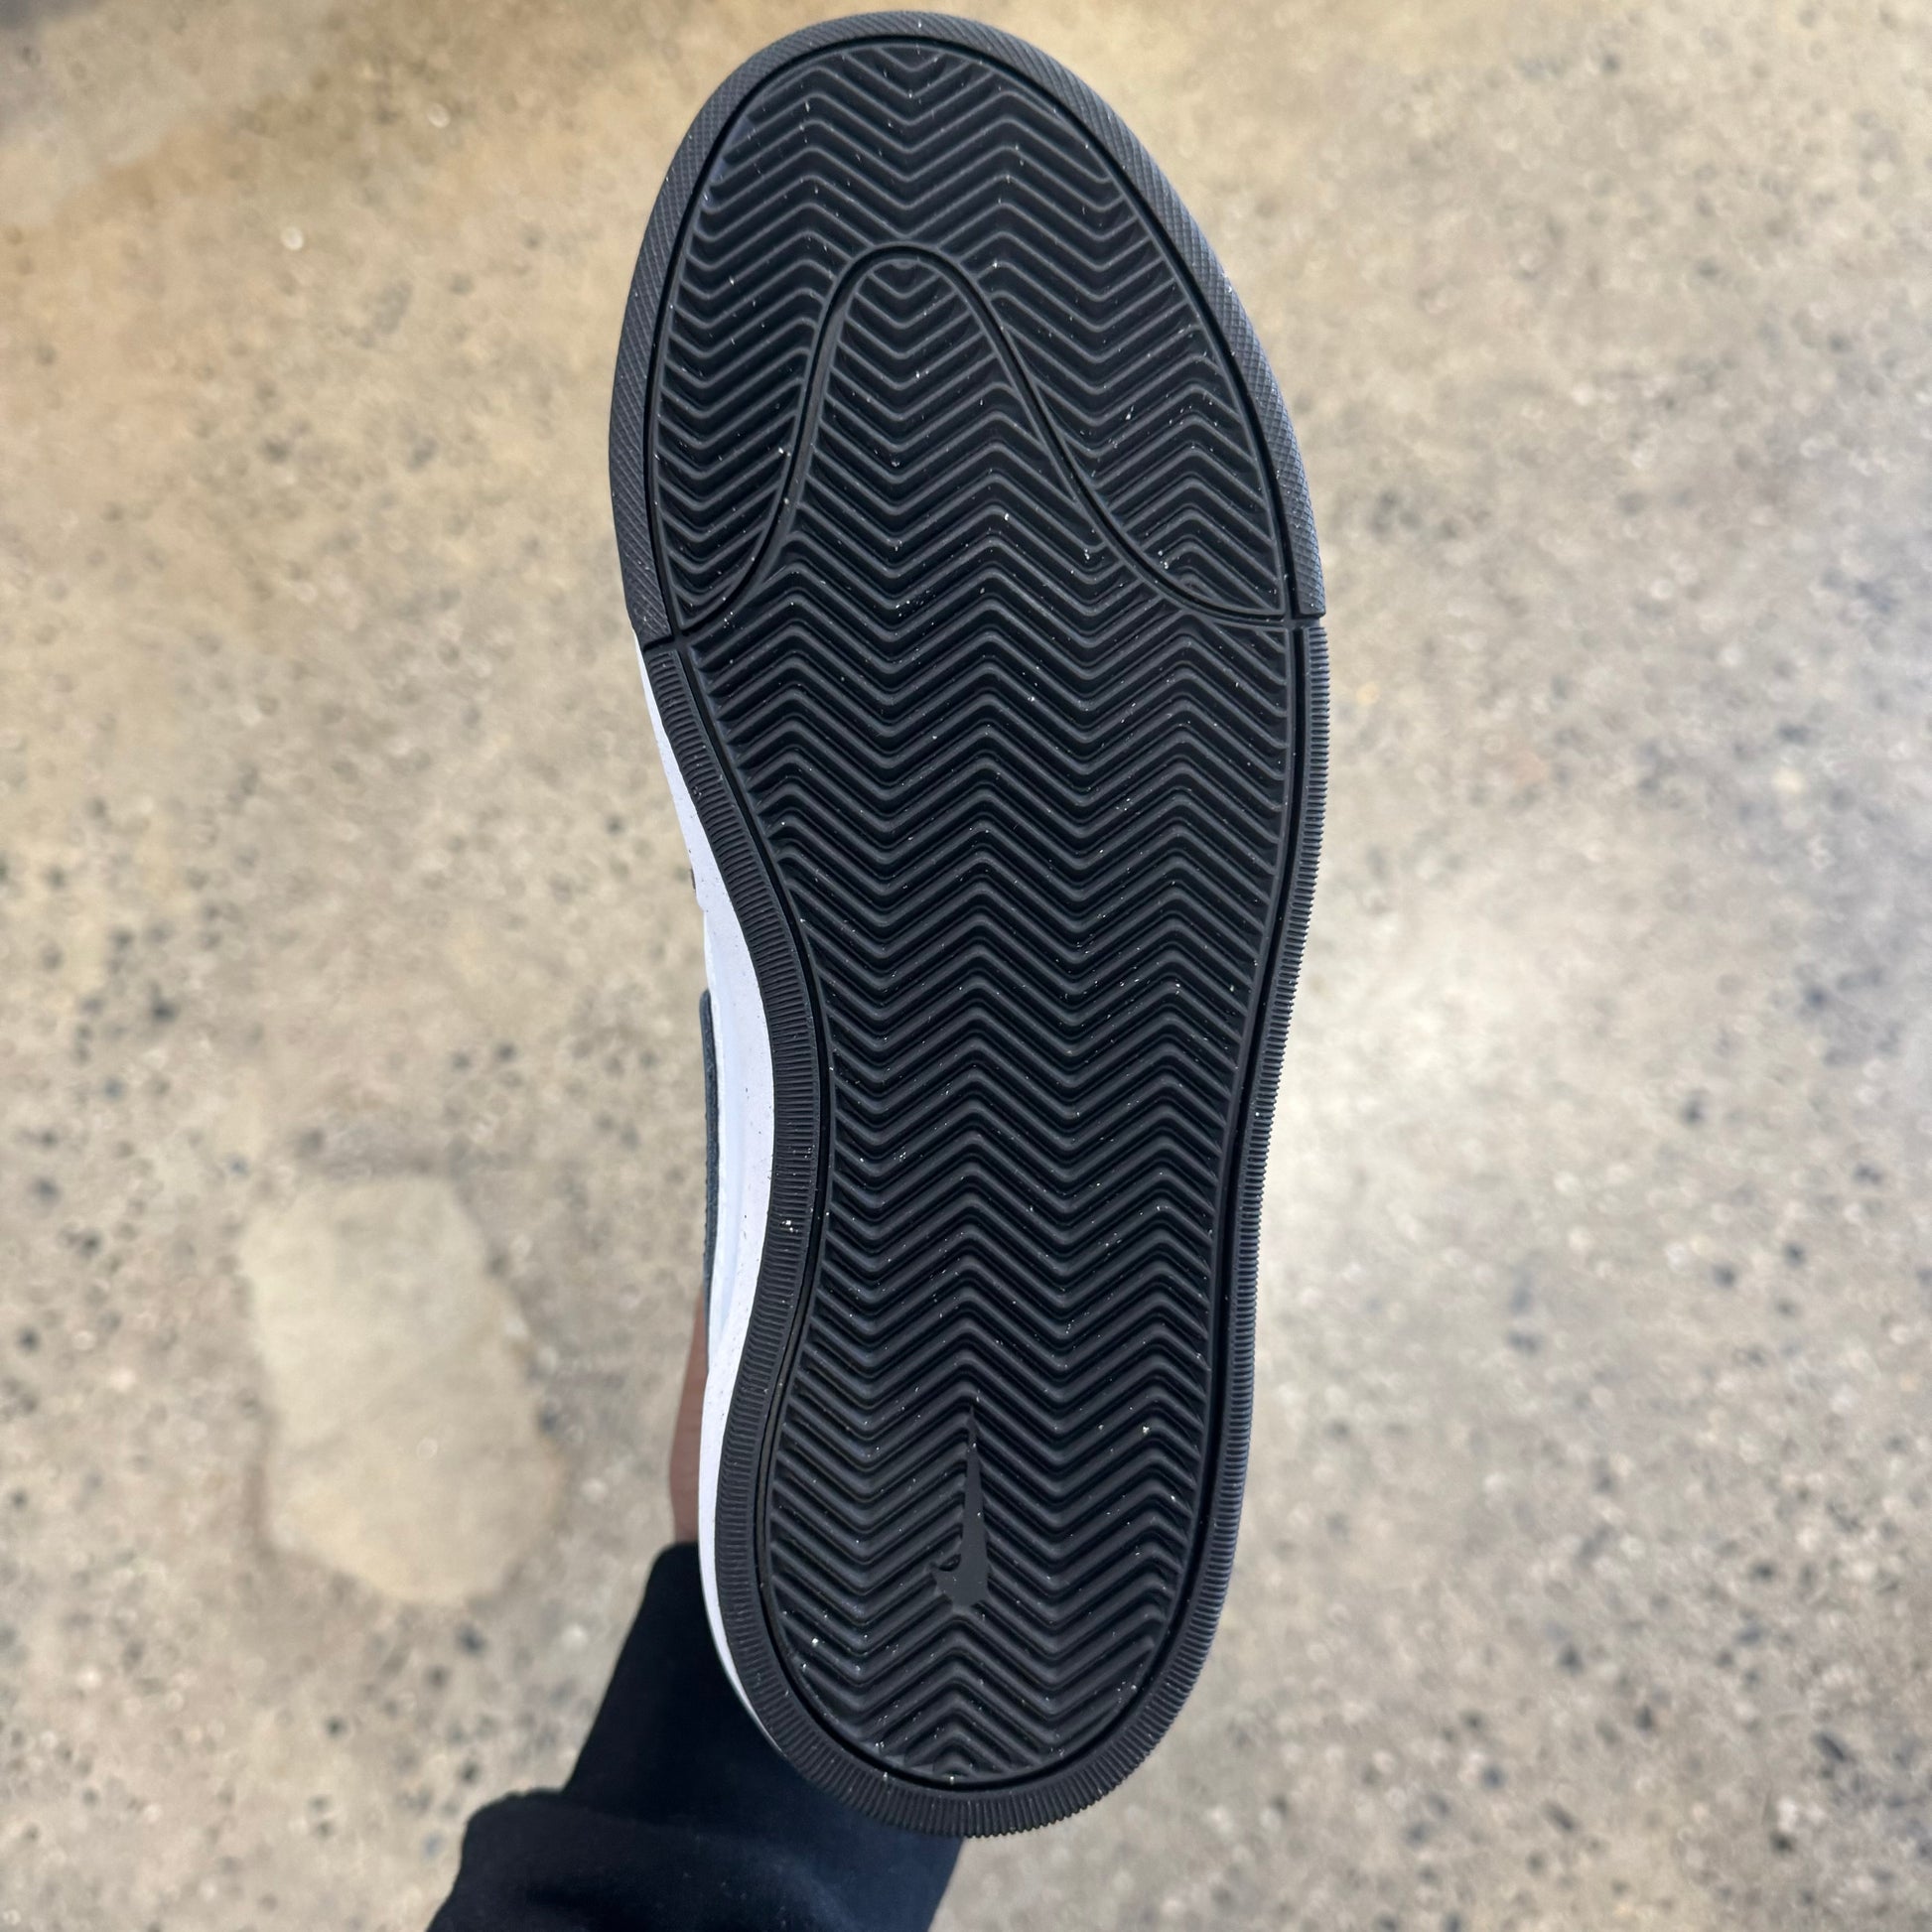 View of bottom of skate sneaker black rubber